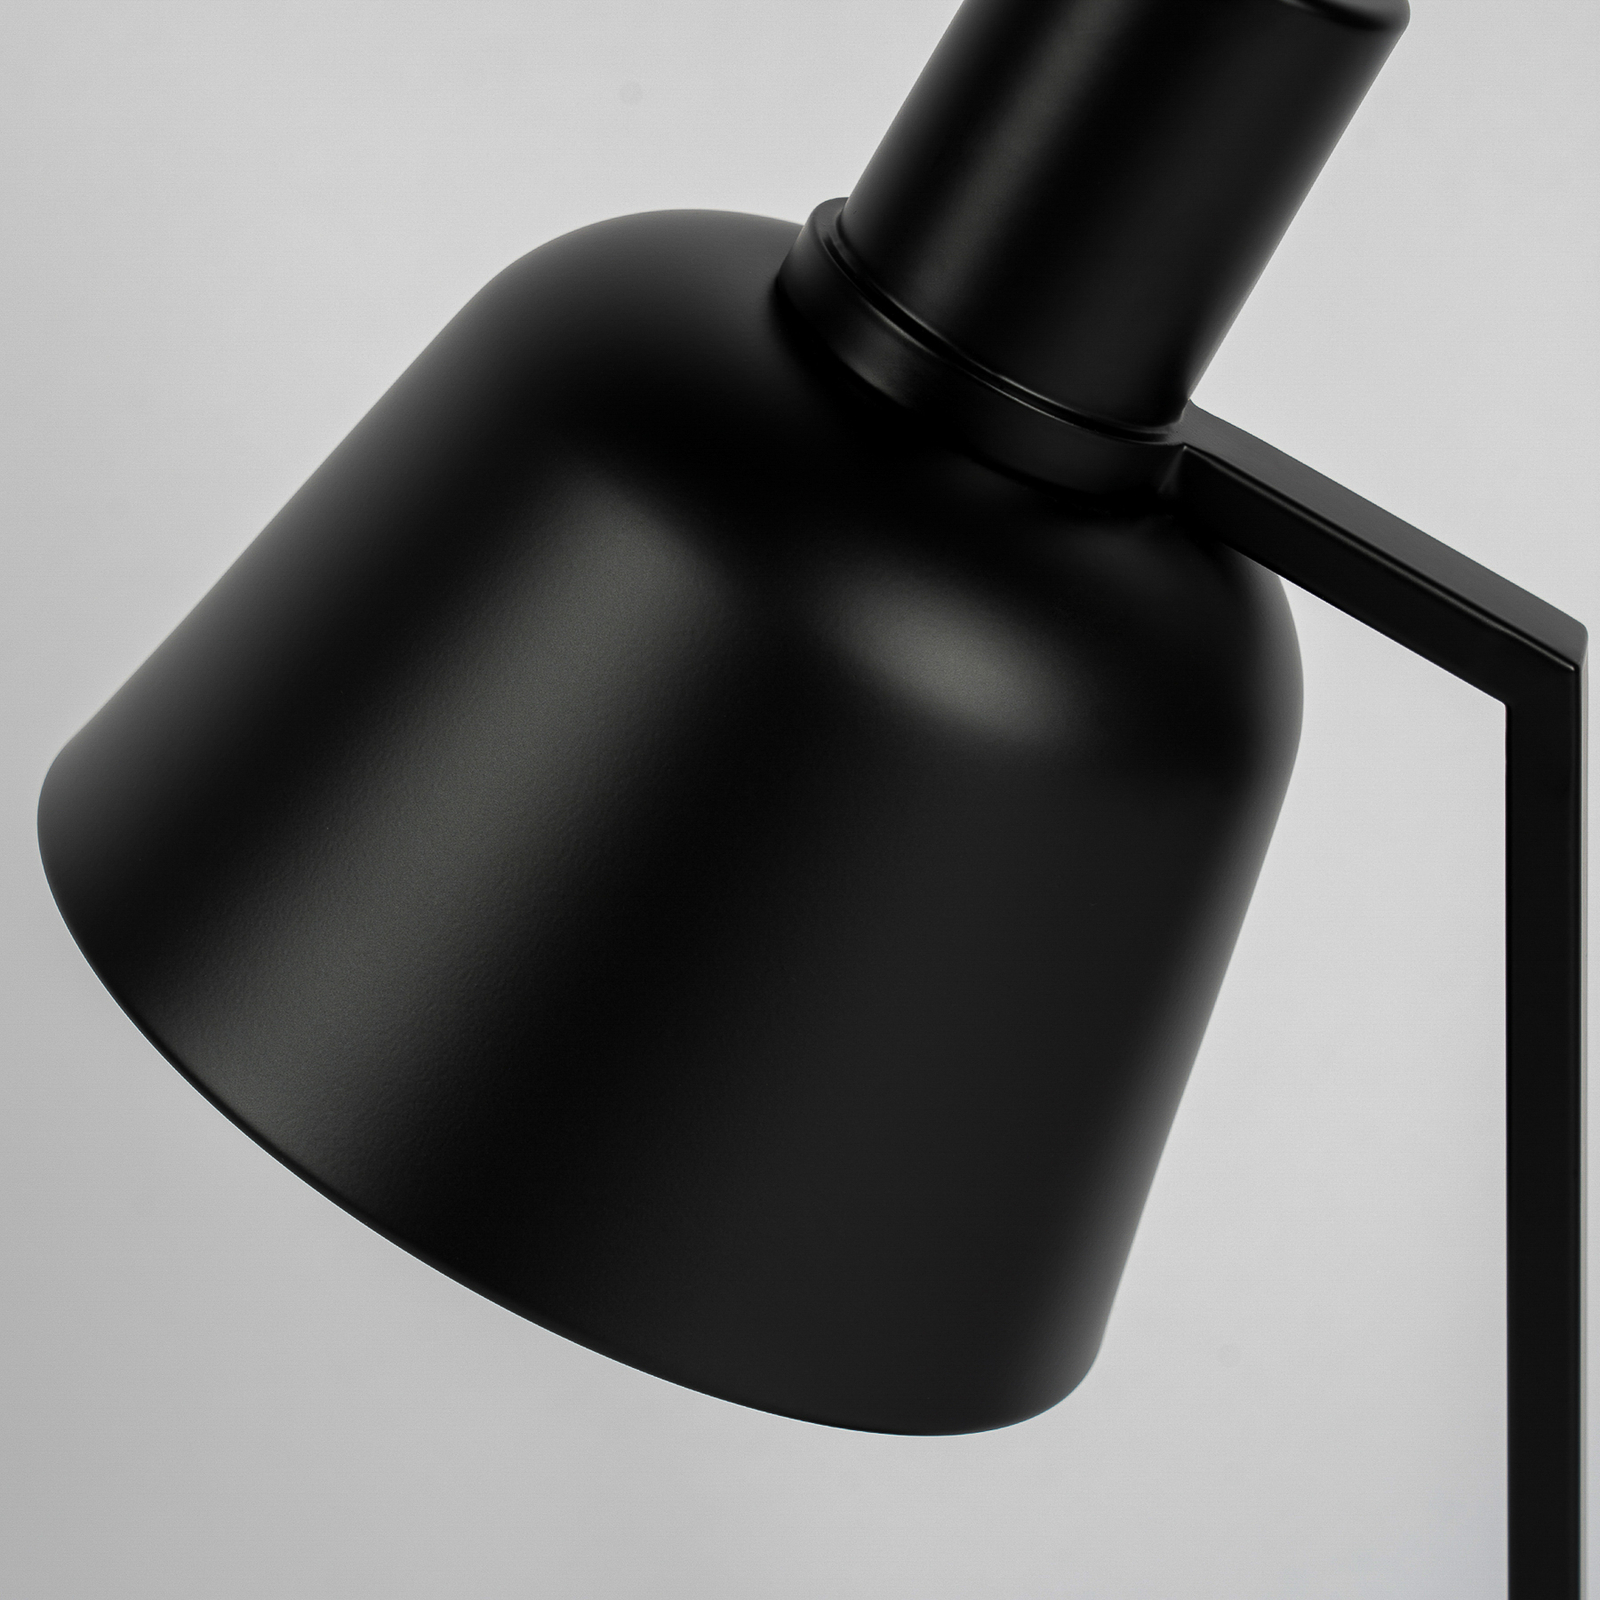 Lucande Servan-bordlampe i sort jern